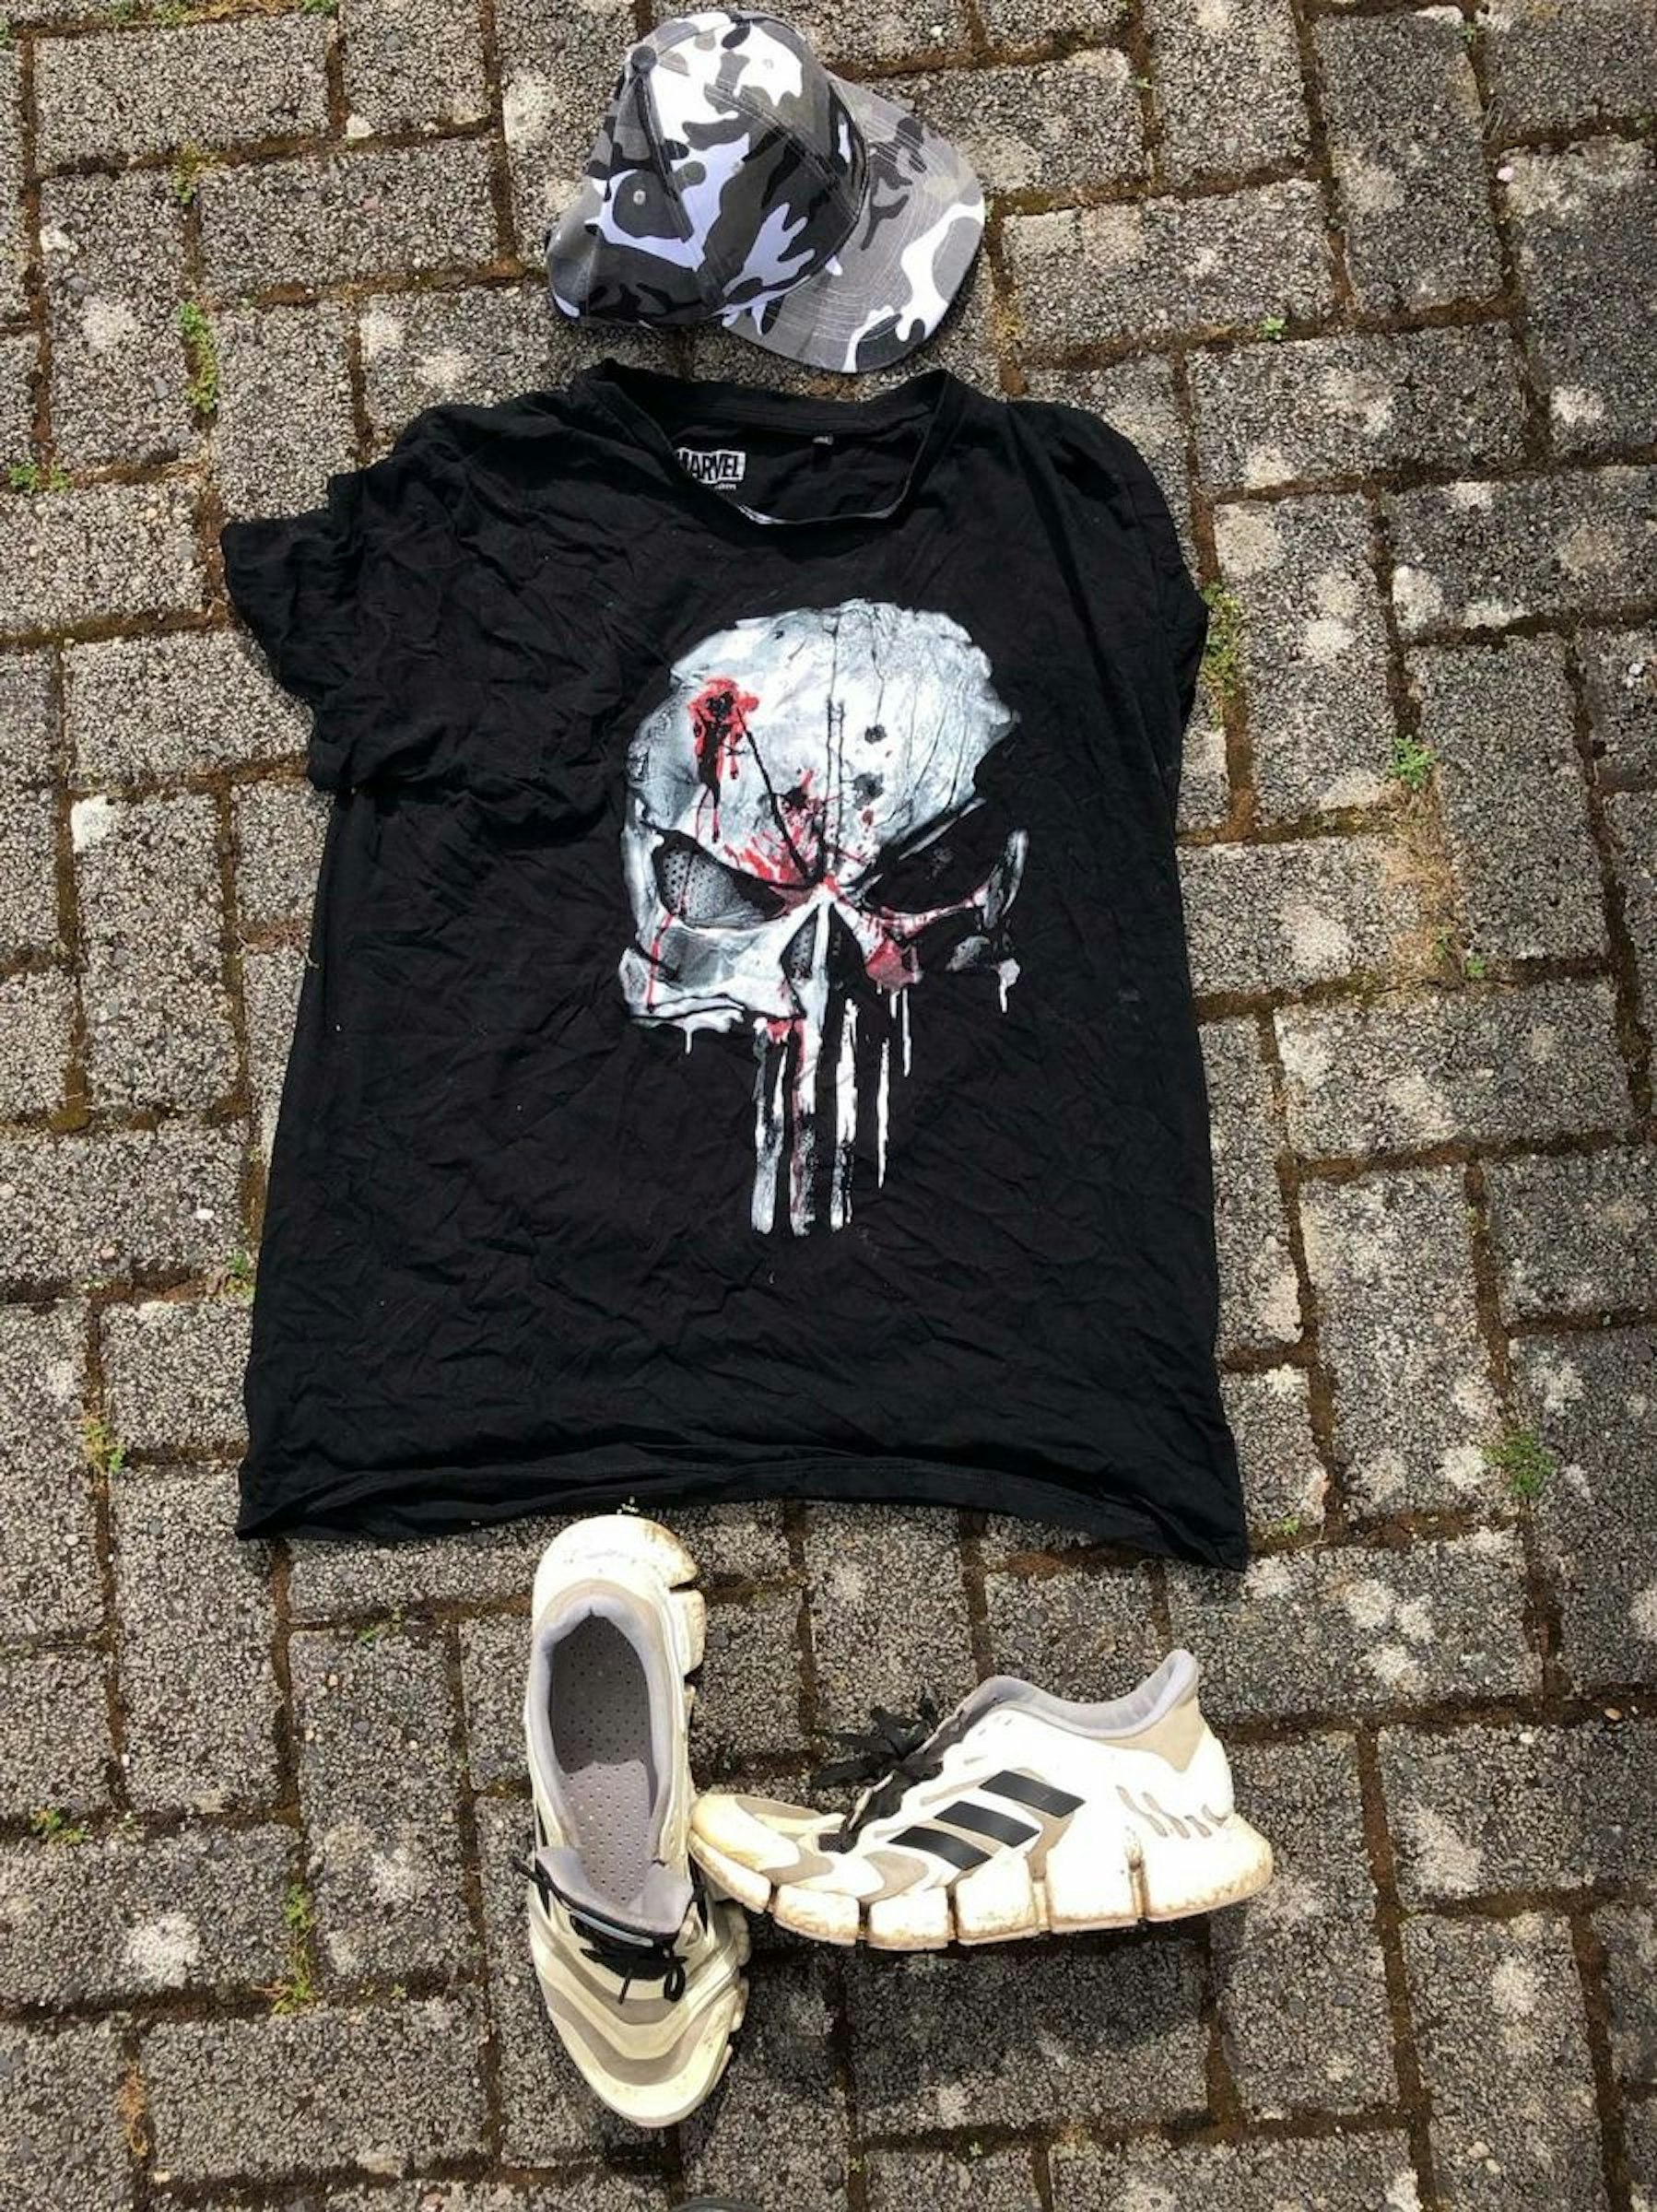 Auf dem Foto sind ein T-Shirt und Schuhe des unbekannten Mannes zu sehen.